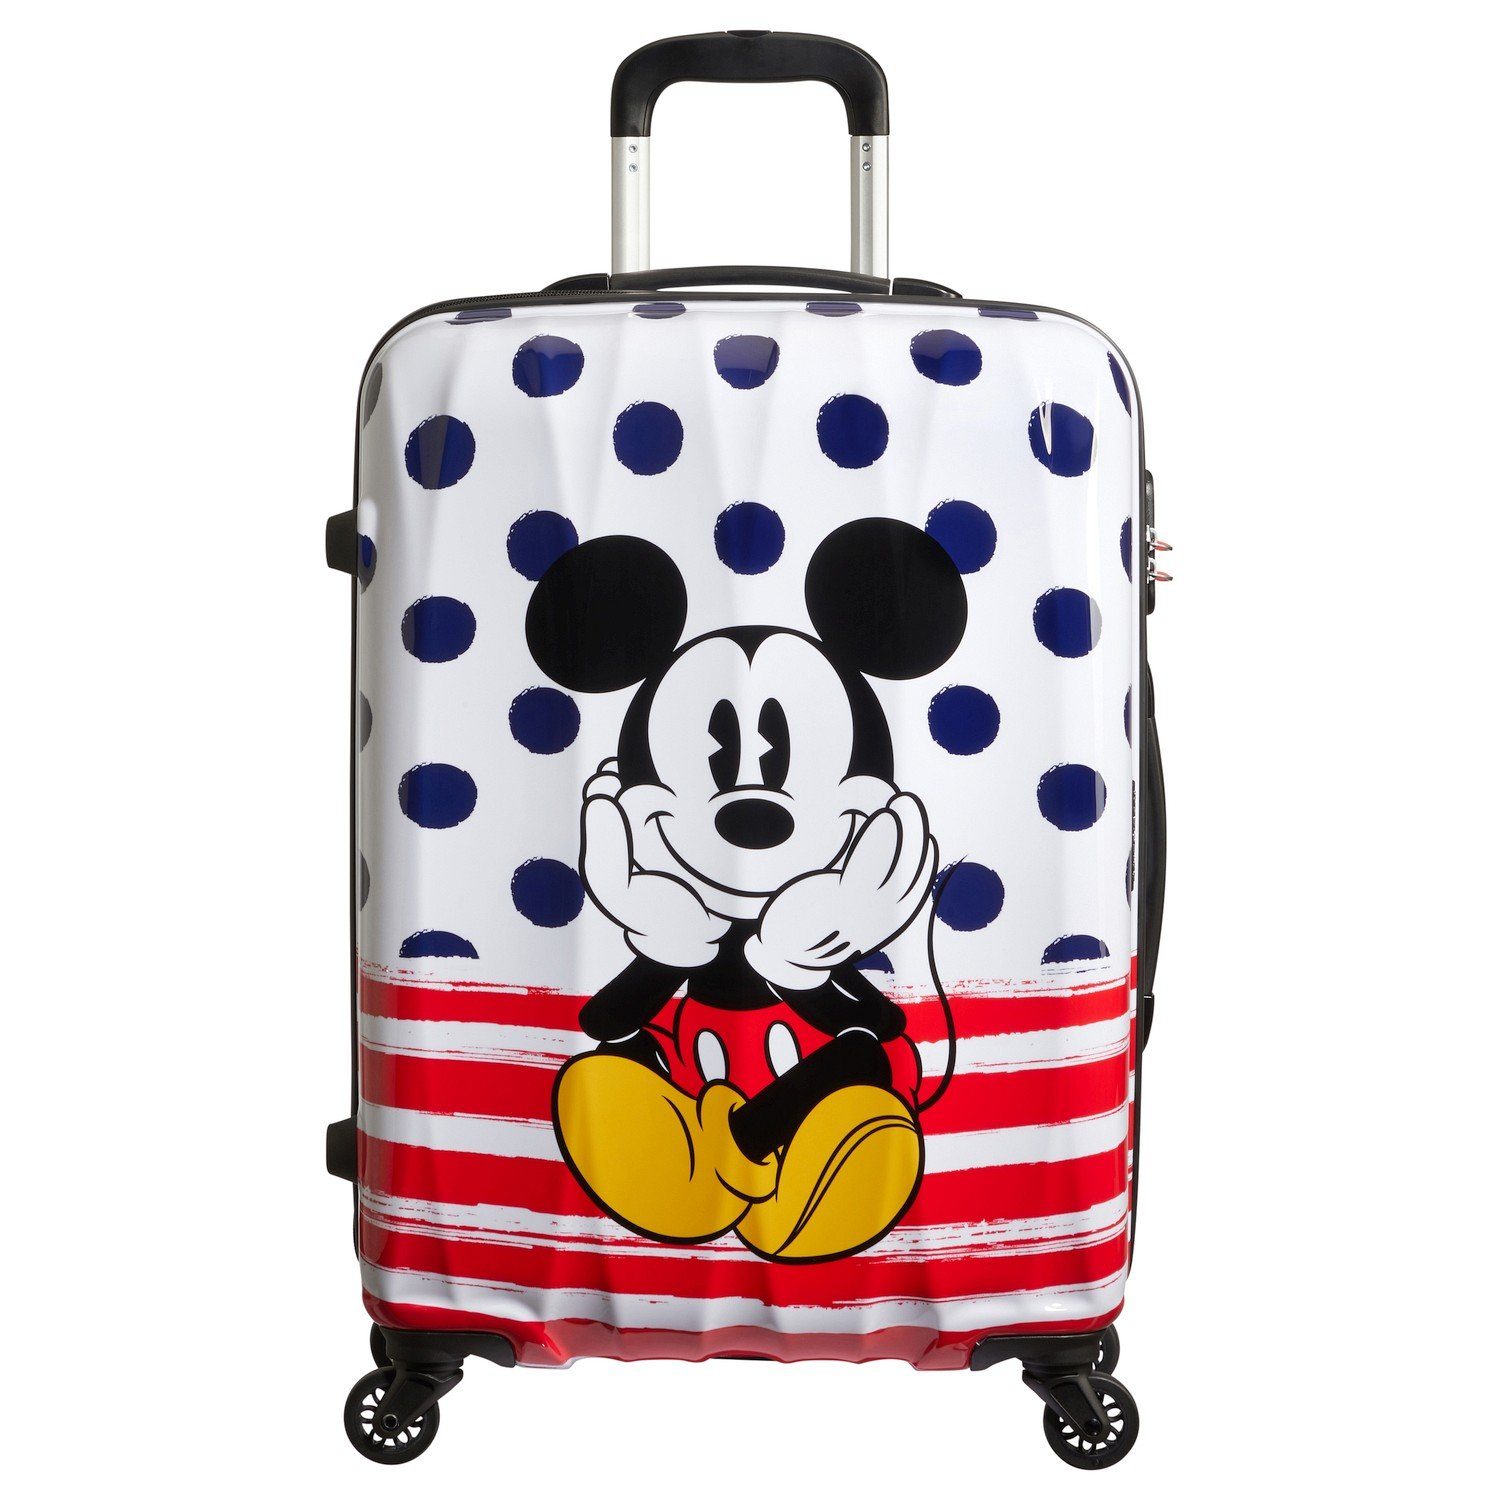 American Tourister® Trolley Disney Alfatwist 2.0 - 4-Rollen-Trolley M 65/24, 4 Rollen Mickey blue Dots